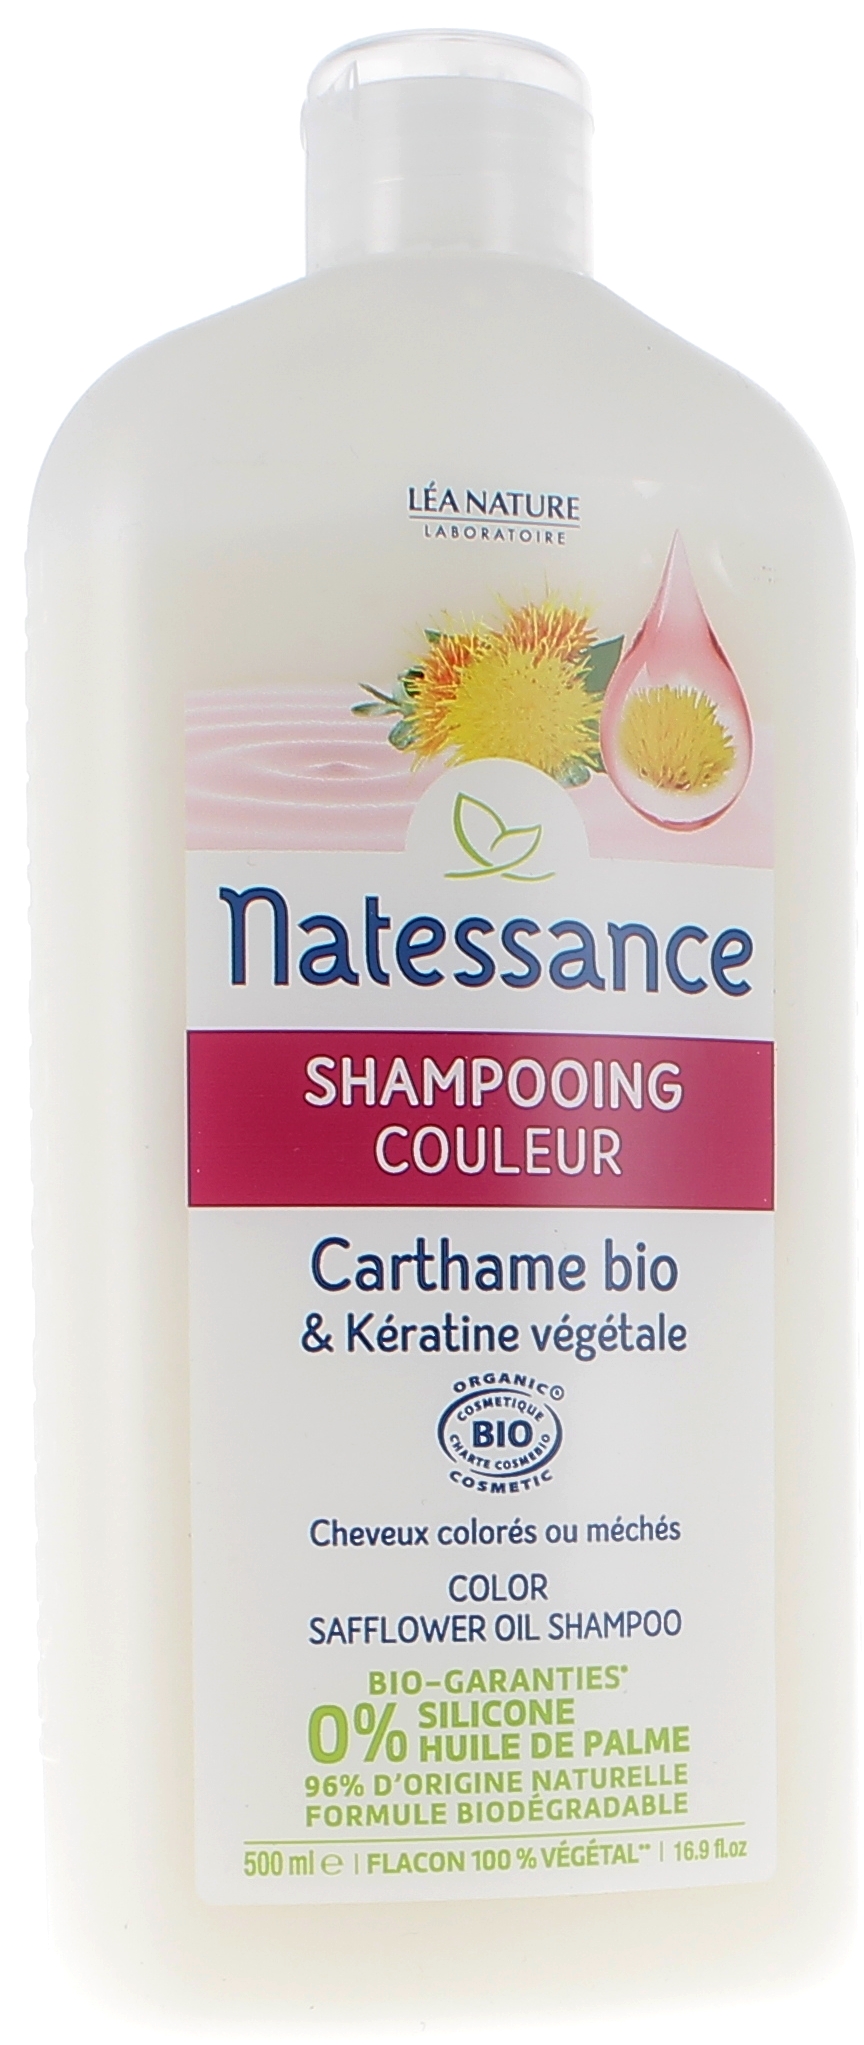 Natessance Après-Shampooing Couleur Carthame Bio et Kératine